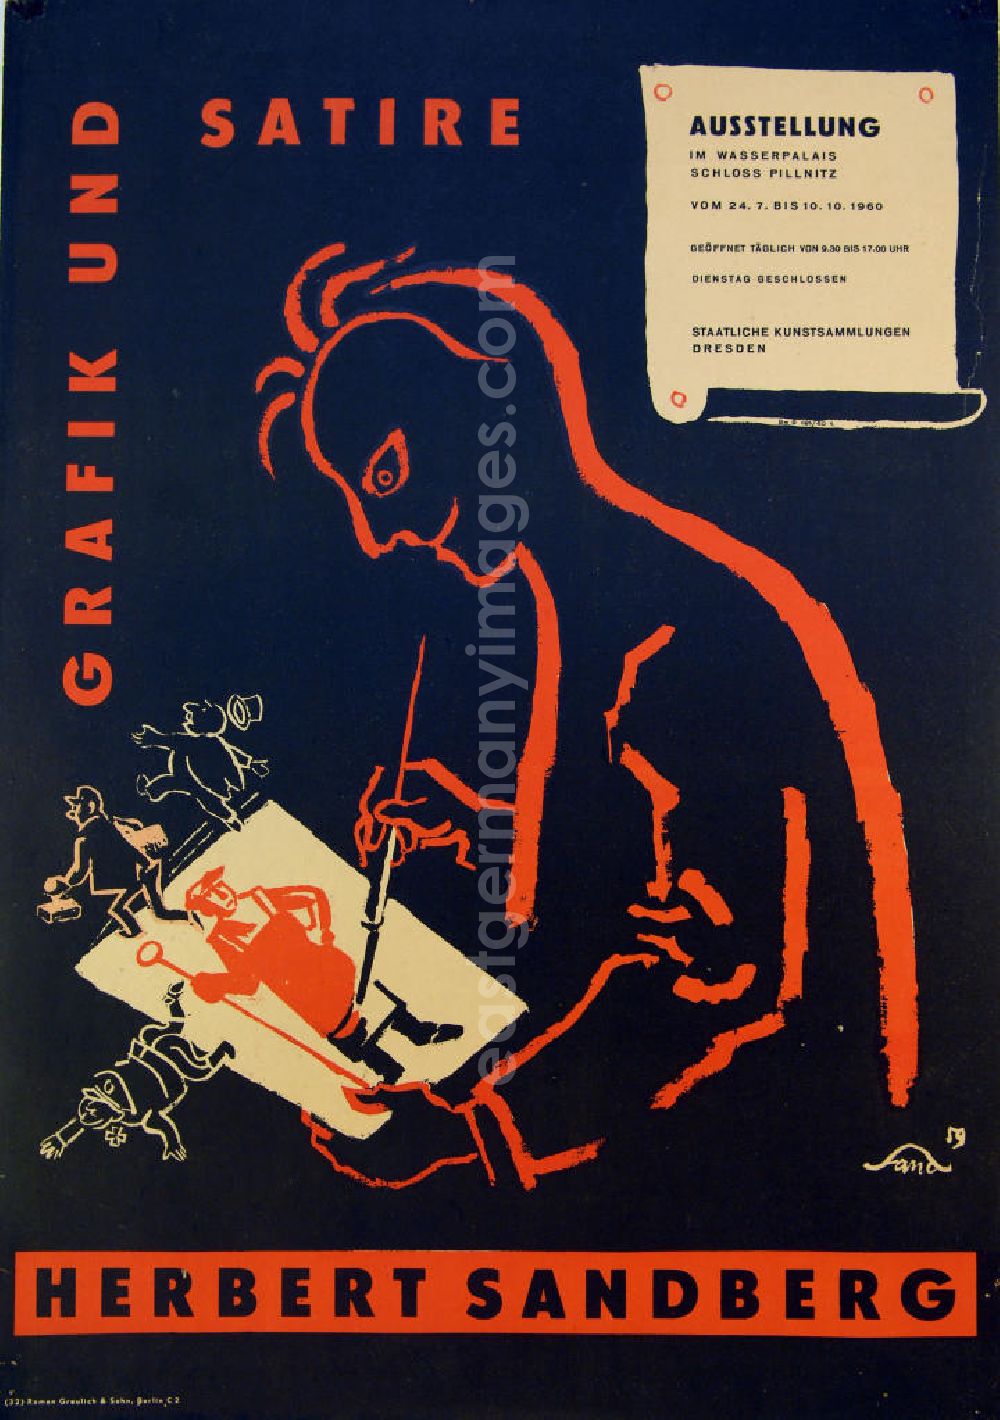 GDR image archive: Berlin - Plakat der Ausstellung Grafik und Satire, Herbert Sandberg vom 24.07.-10.10.196